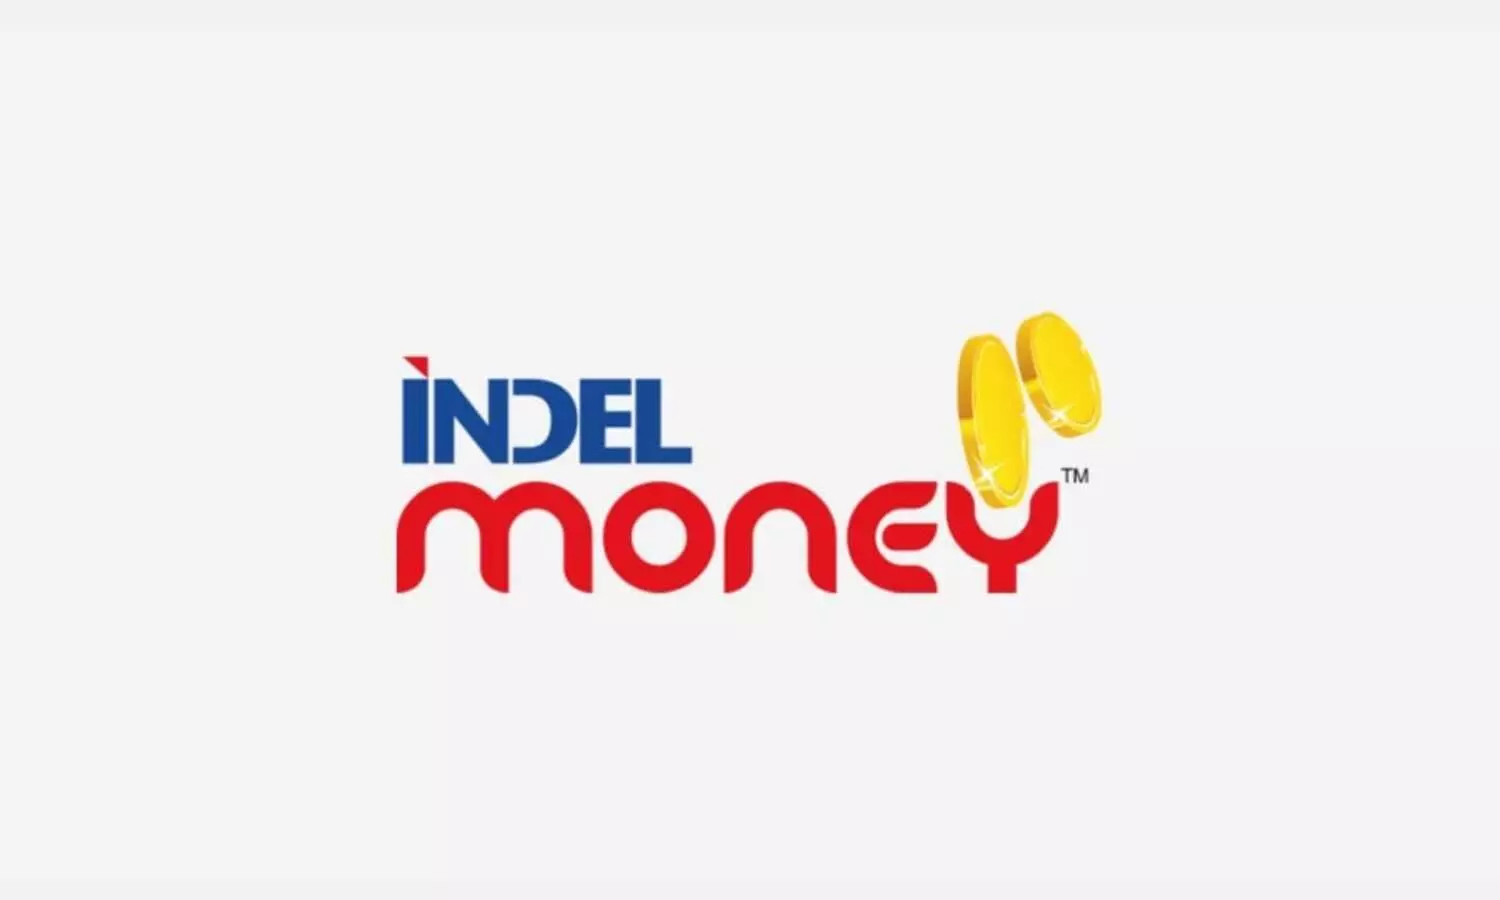 Indel money results